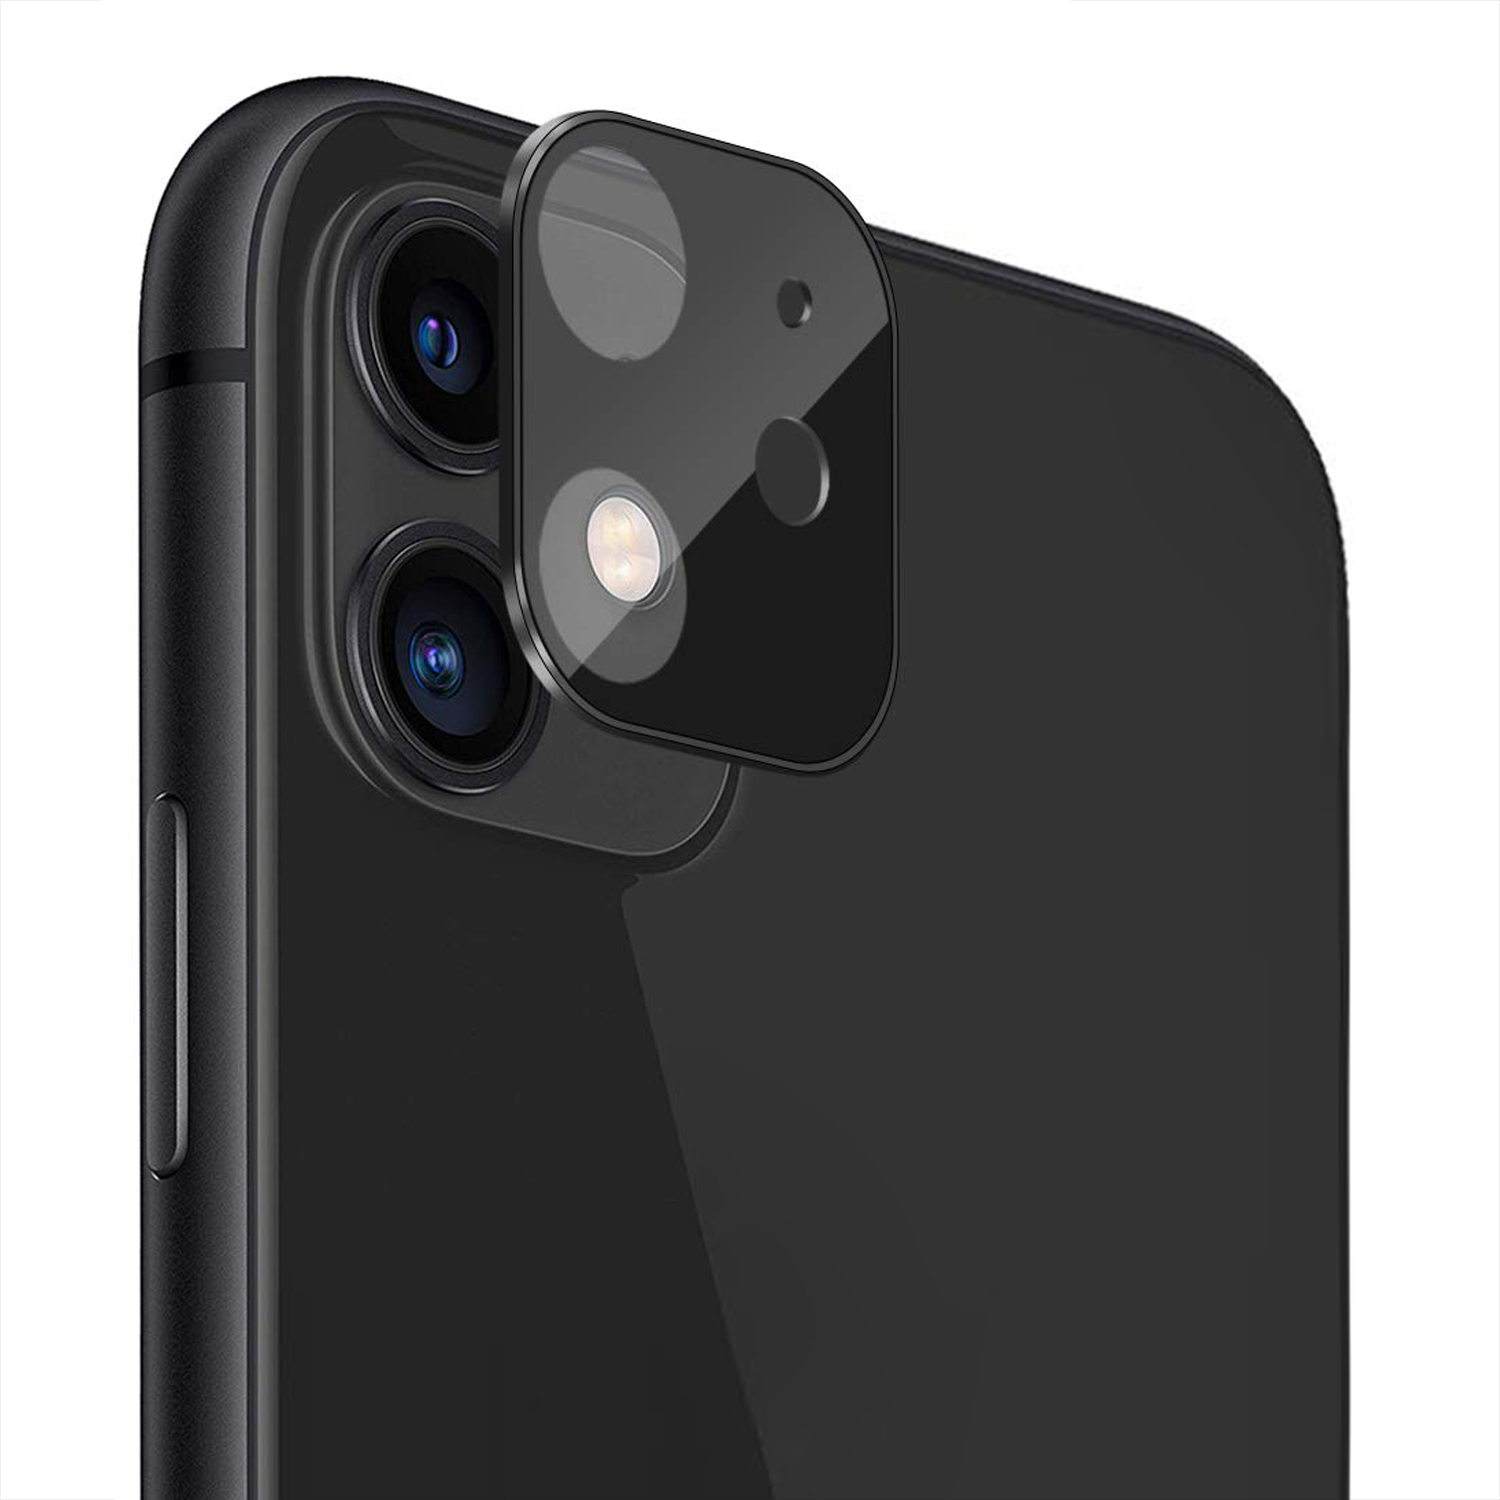 Microsonic Apple iPhone 11 6 1 Kamera Lens Koruma Camı V2 Siyah